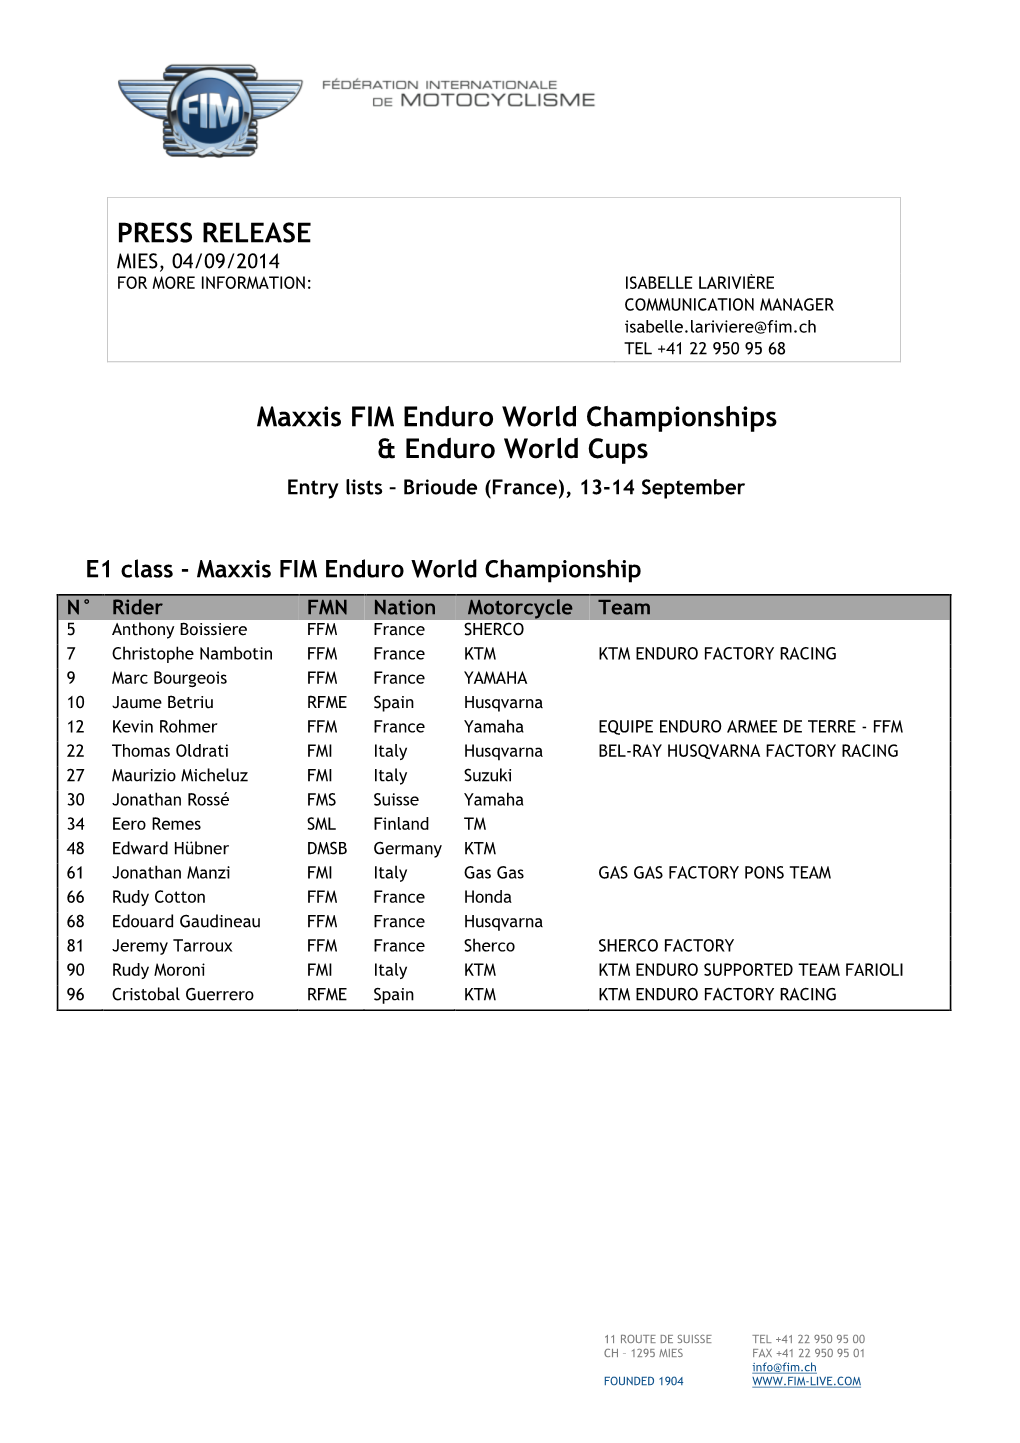 PRESS RELEASE Maxxis FIM Enduro World Championships & Enduro